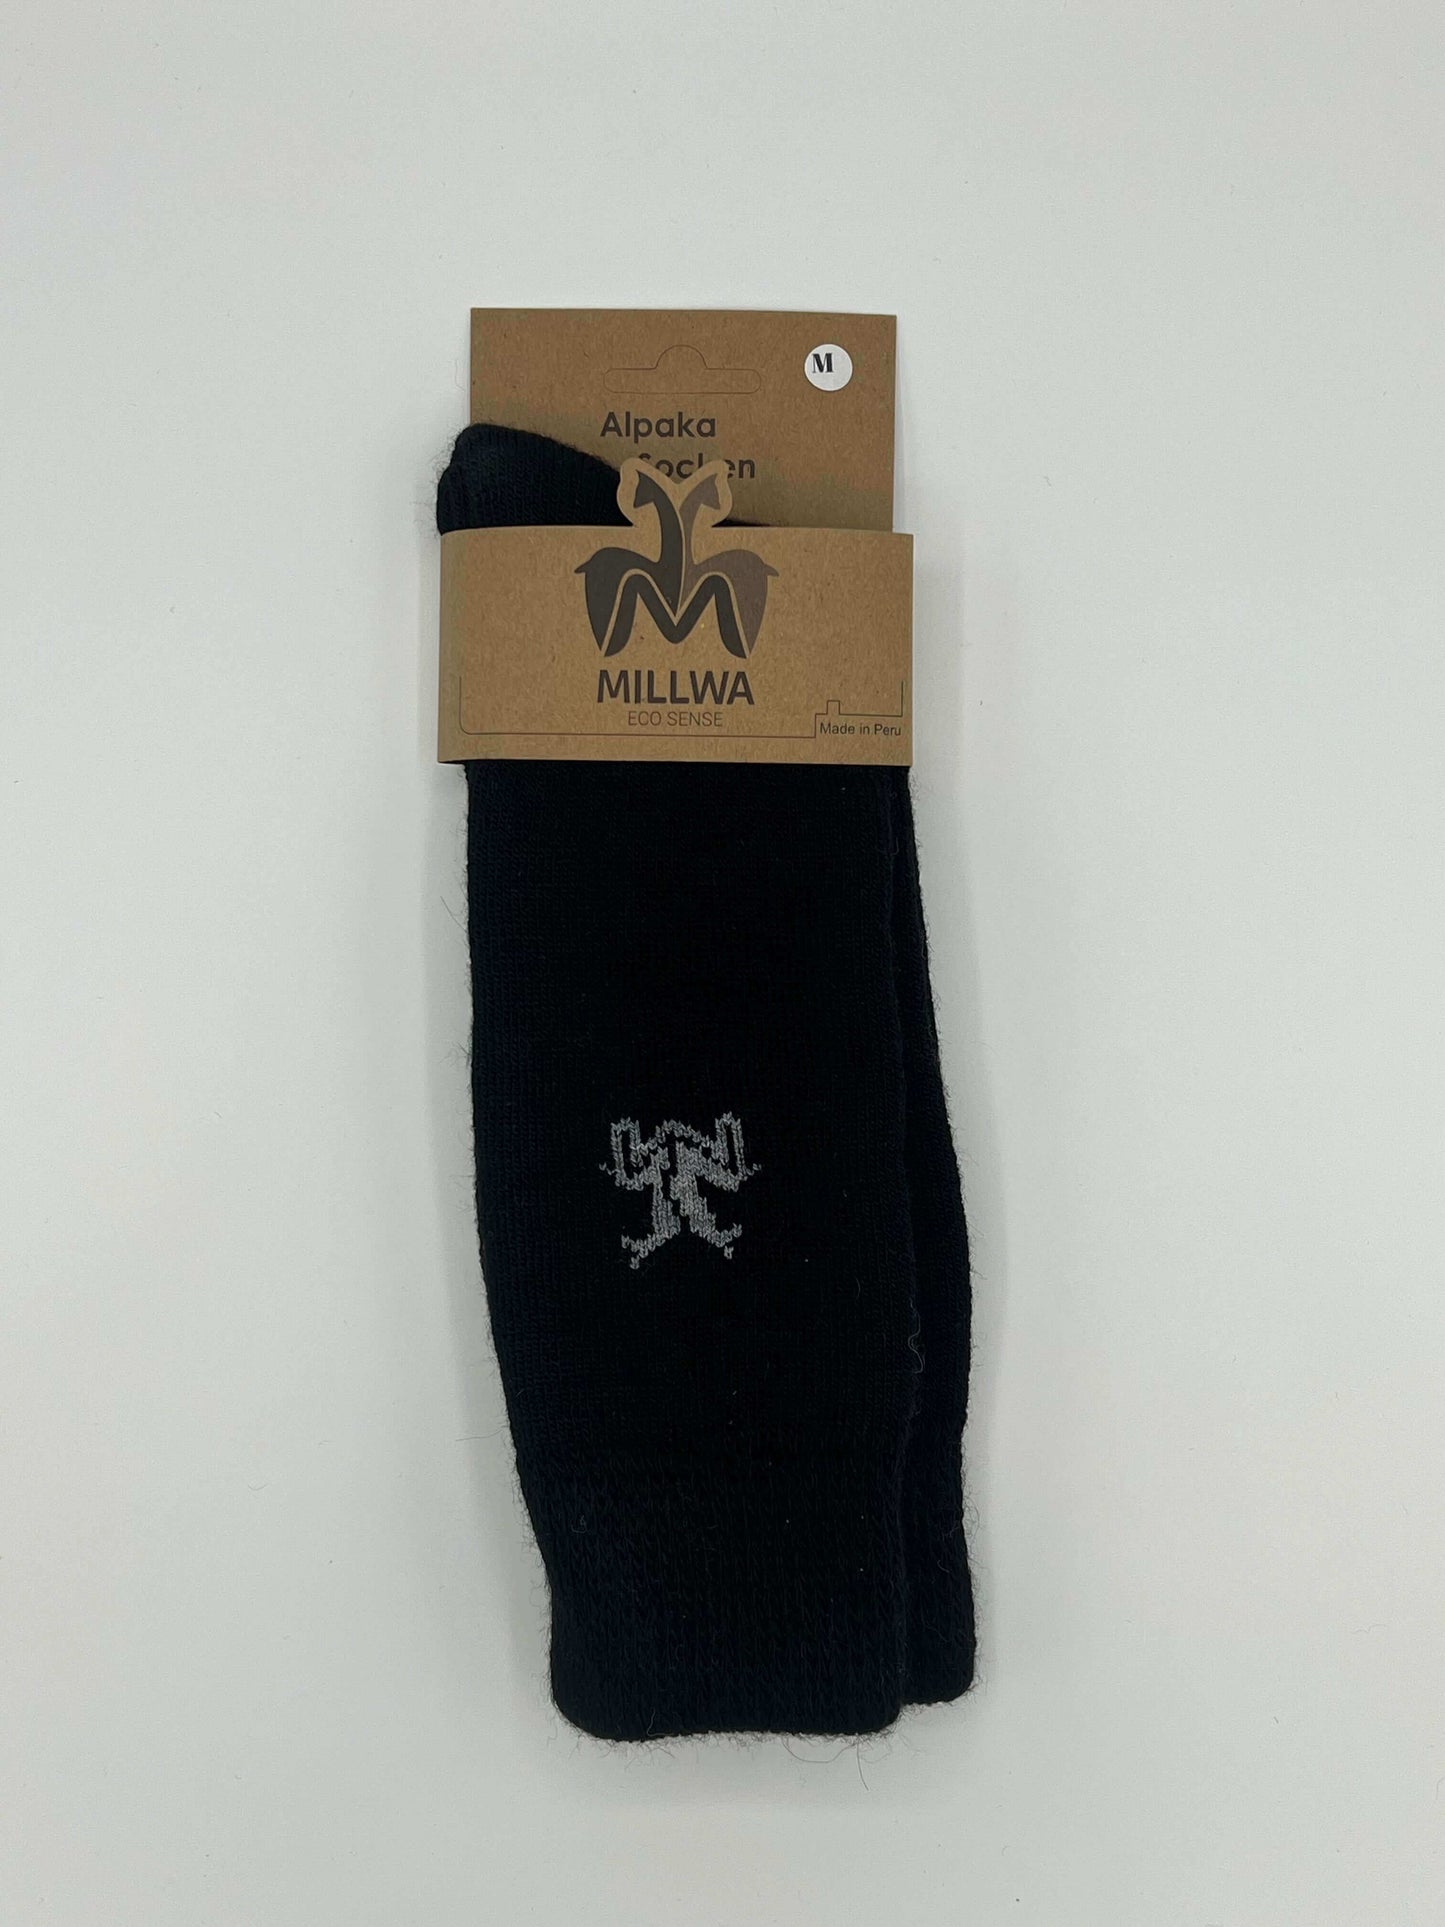 Dicke Socken aus weicher Alpaka Wolle - für die kalte Jahreszeit geeignet!